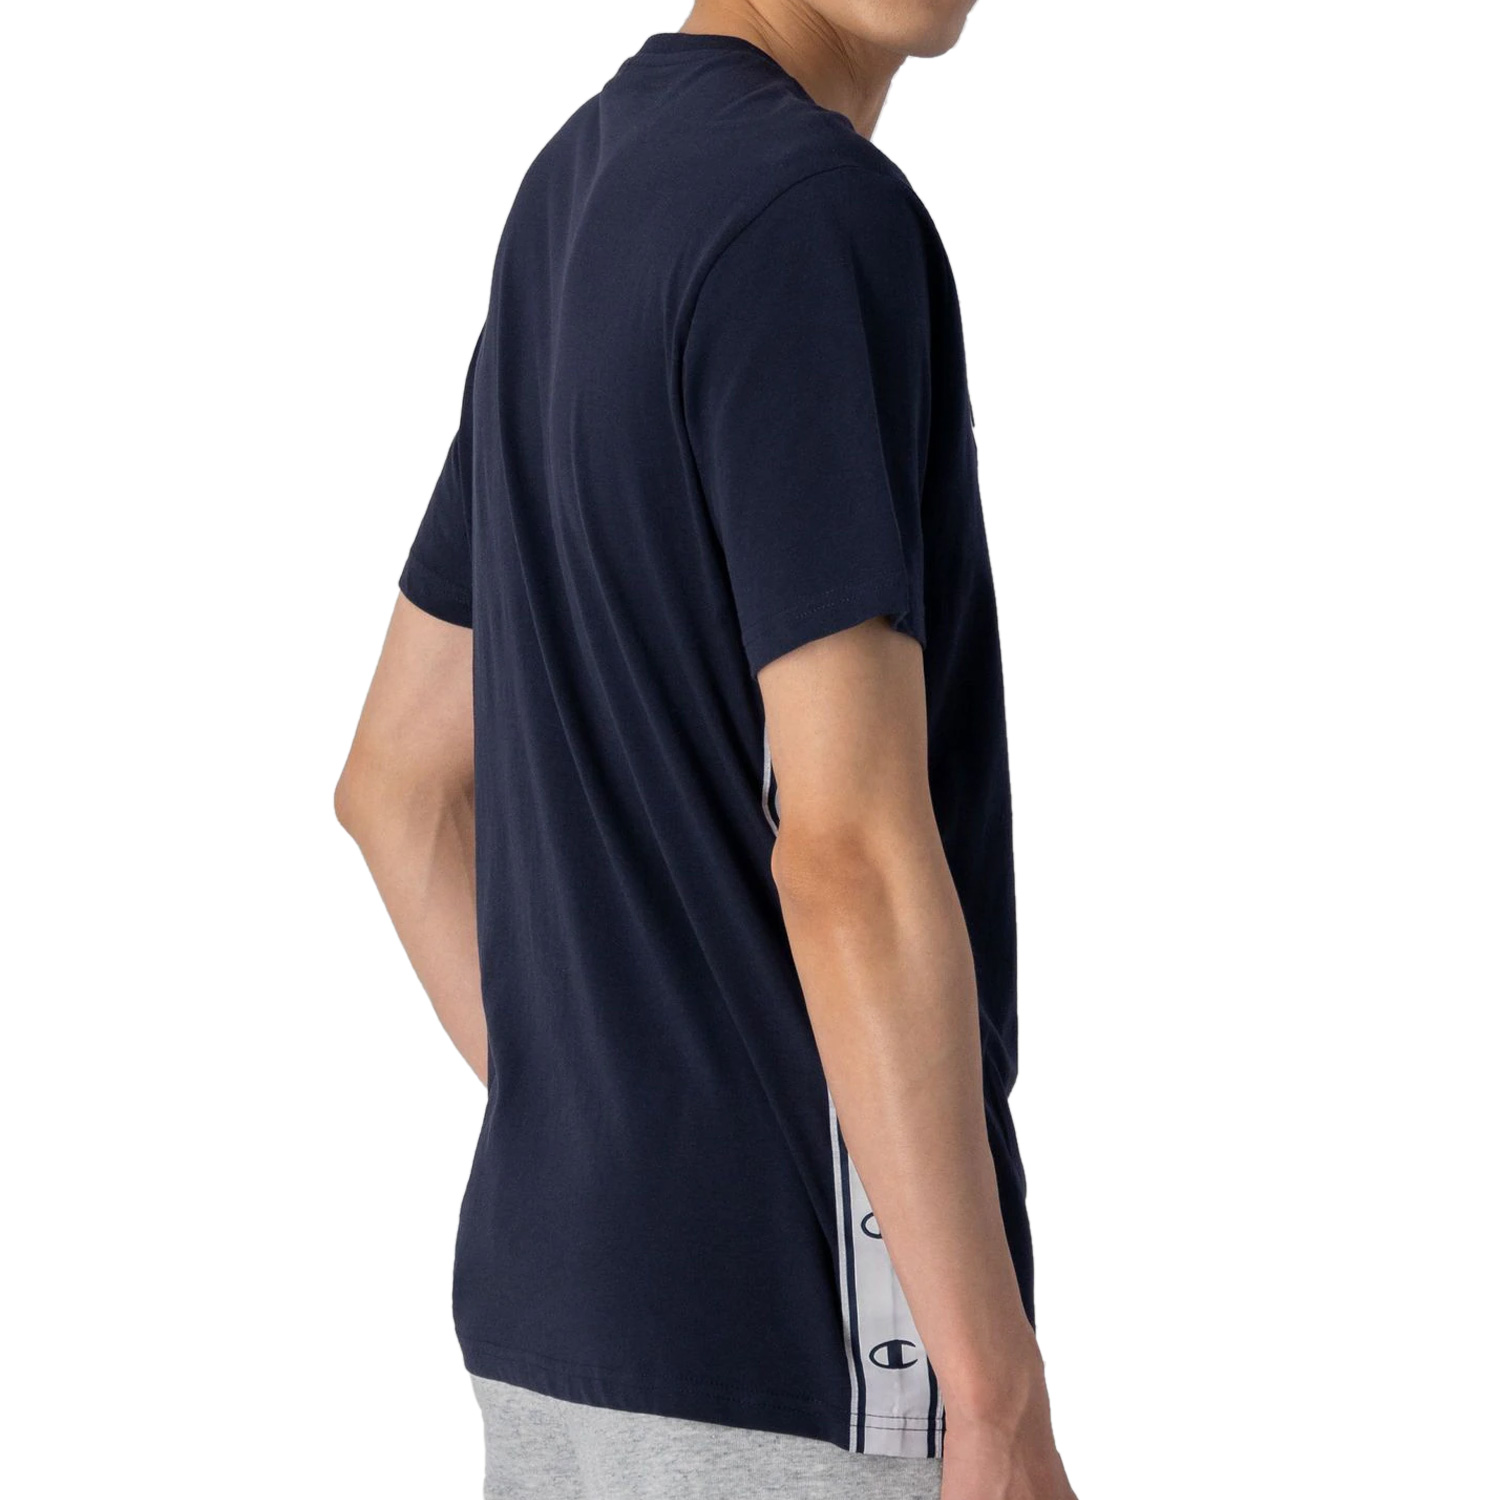 Champion Baumwoll-T-Shirt mit seitlichem Logoband dunkelblau